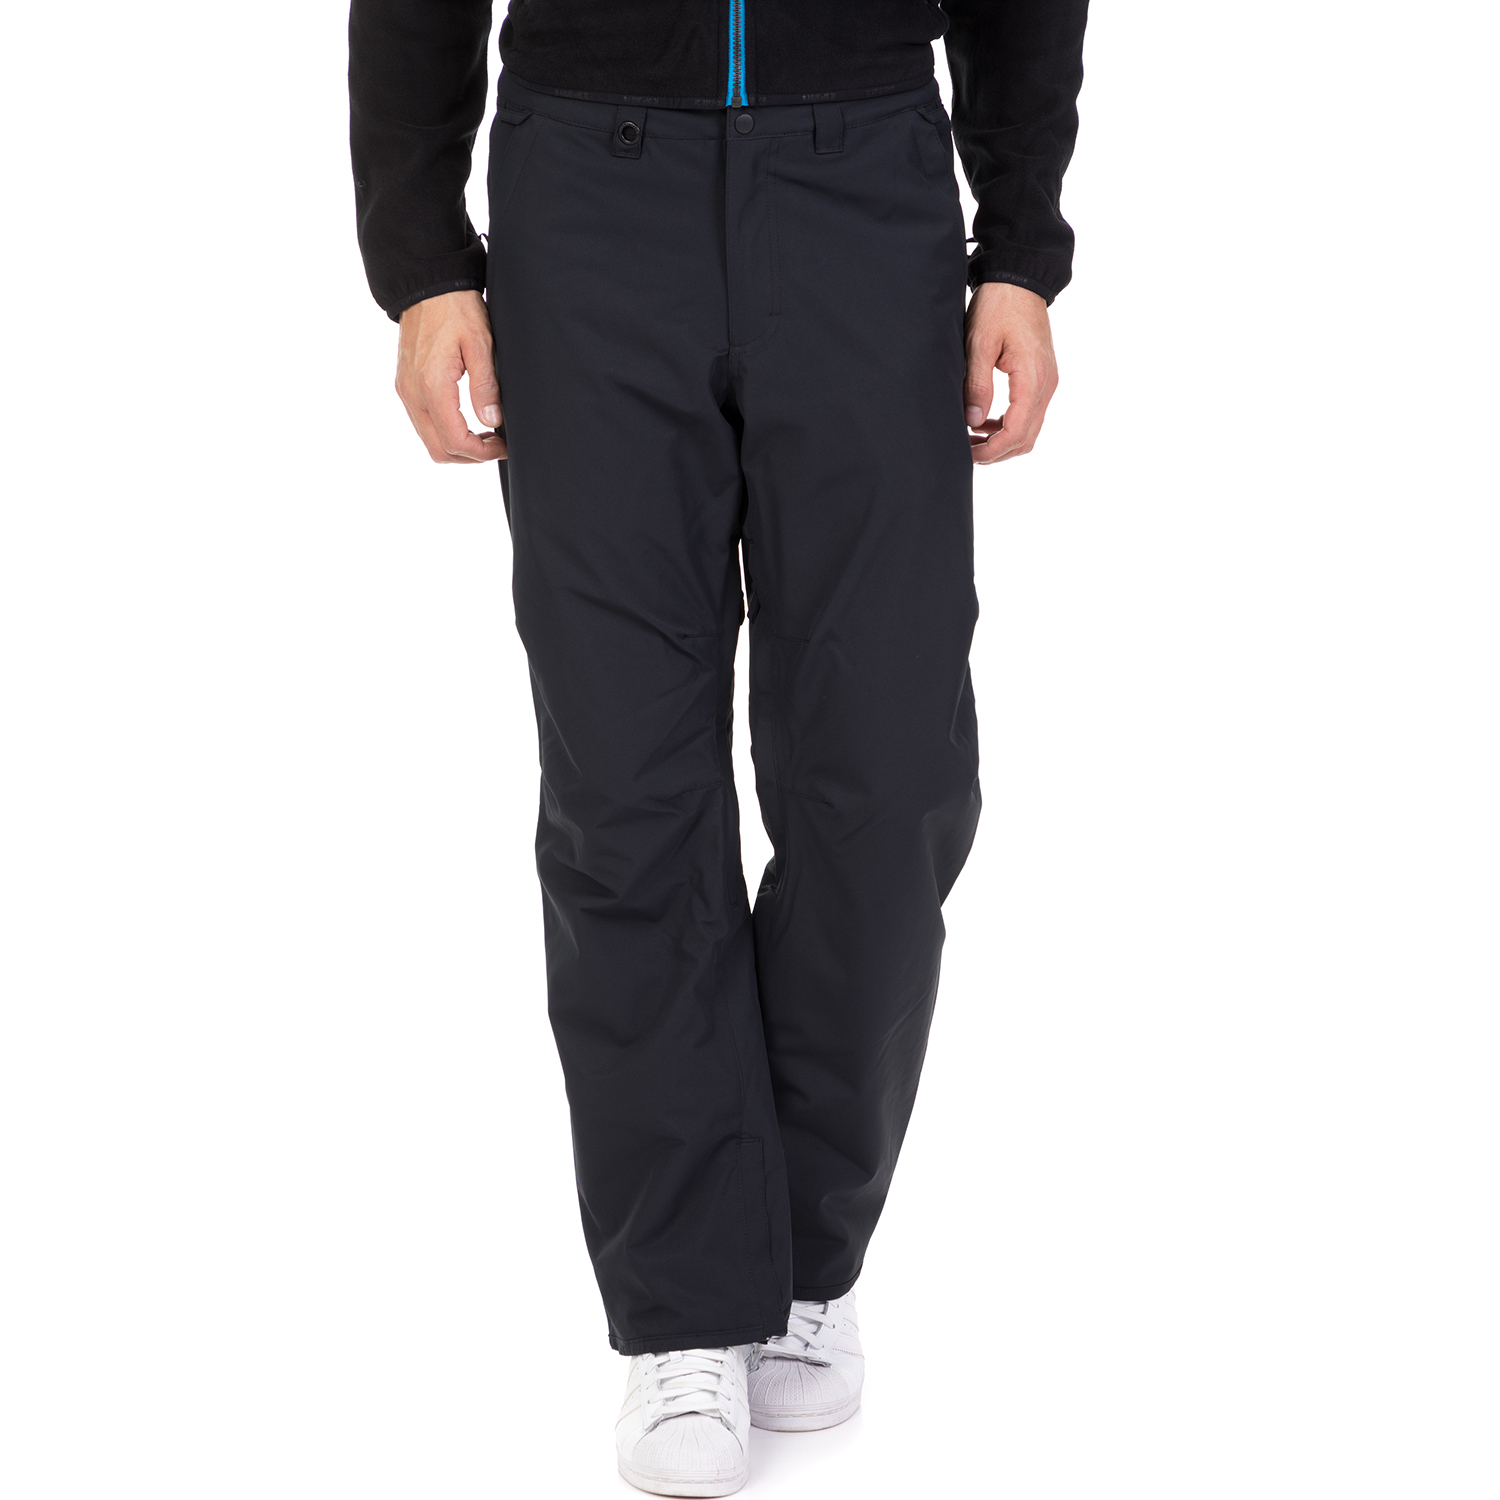 Ανδρικά/Ρούχα/Αθλητικά/Φόρμες QUIKSILVER - Ανδρικό παντελόνι για σκι ESTATE PT SNOW QUIKSILVER μαύρο